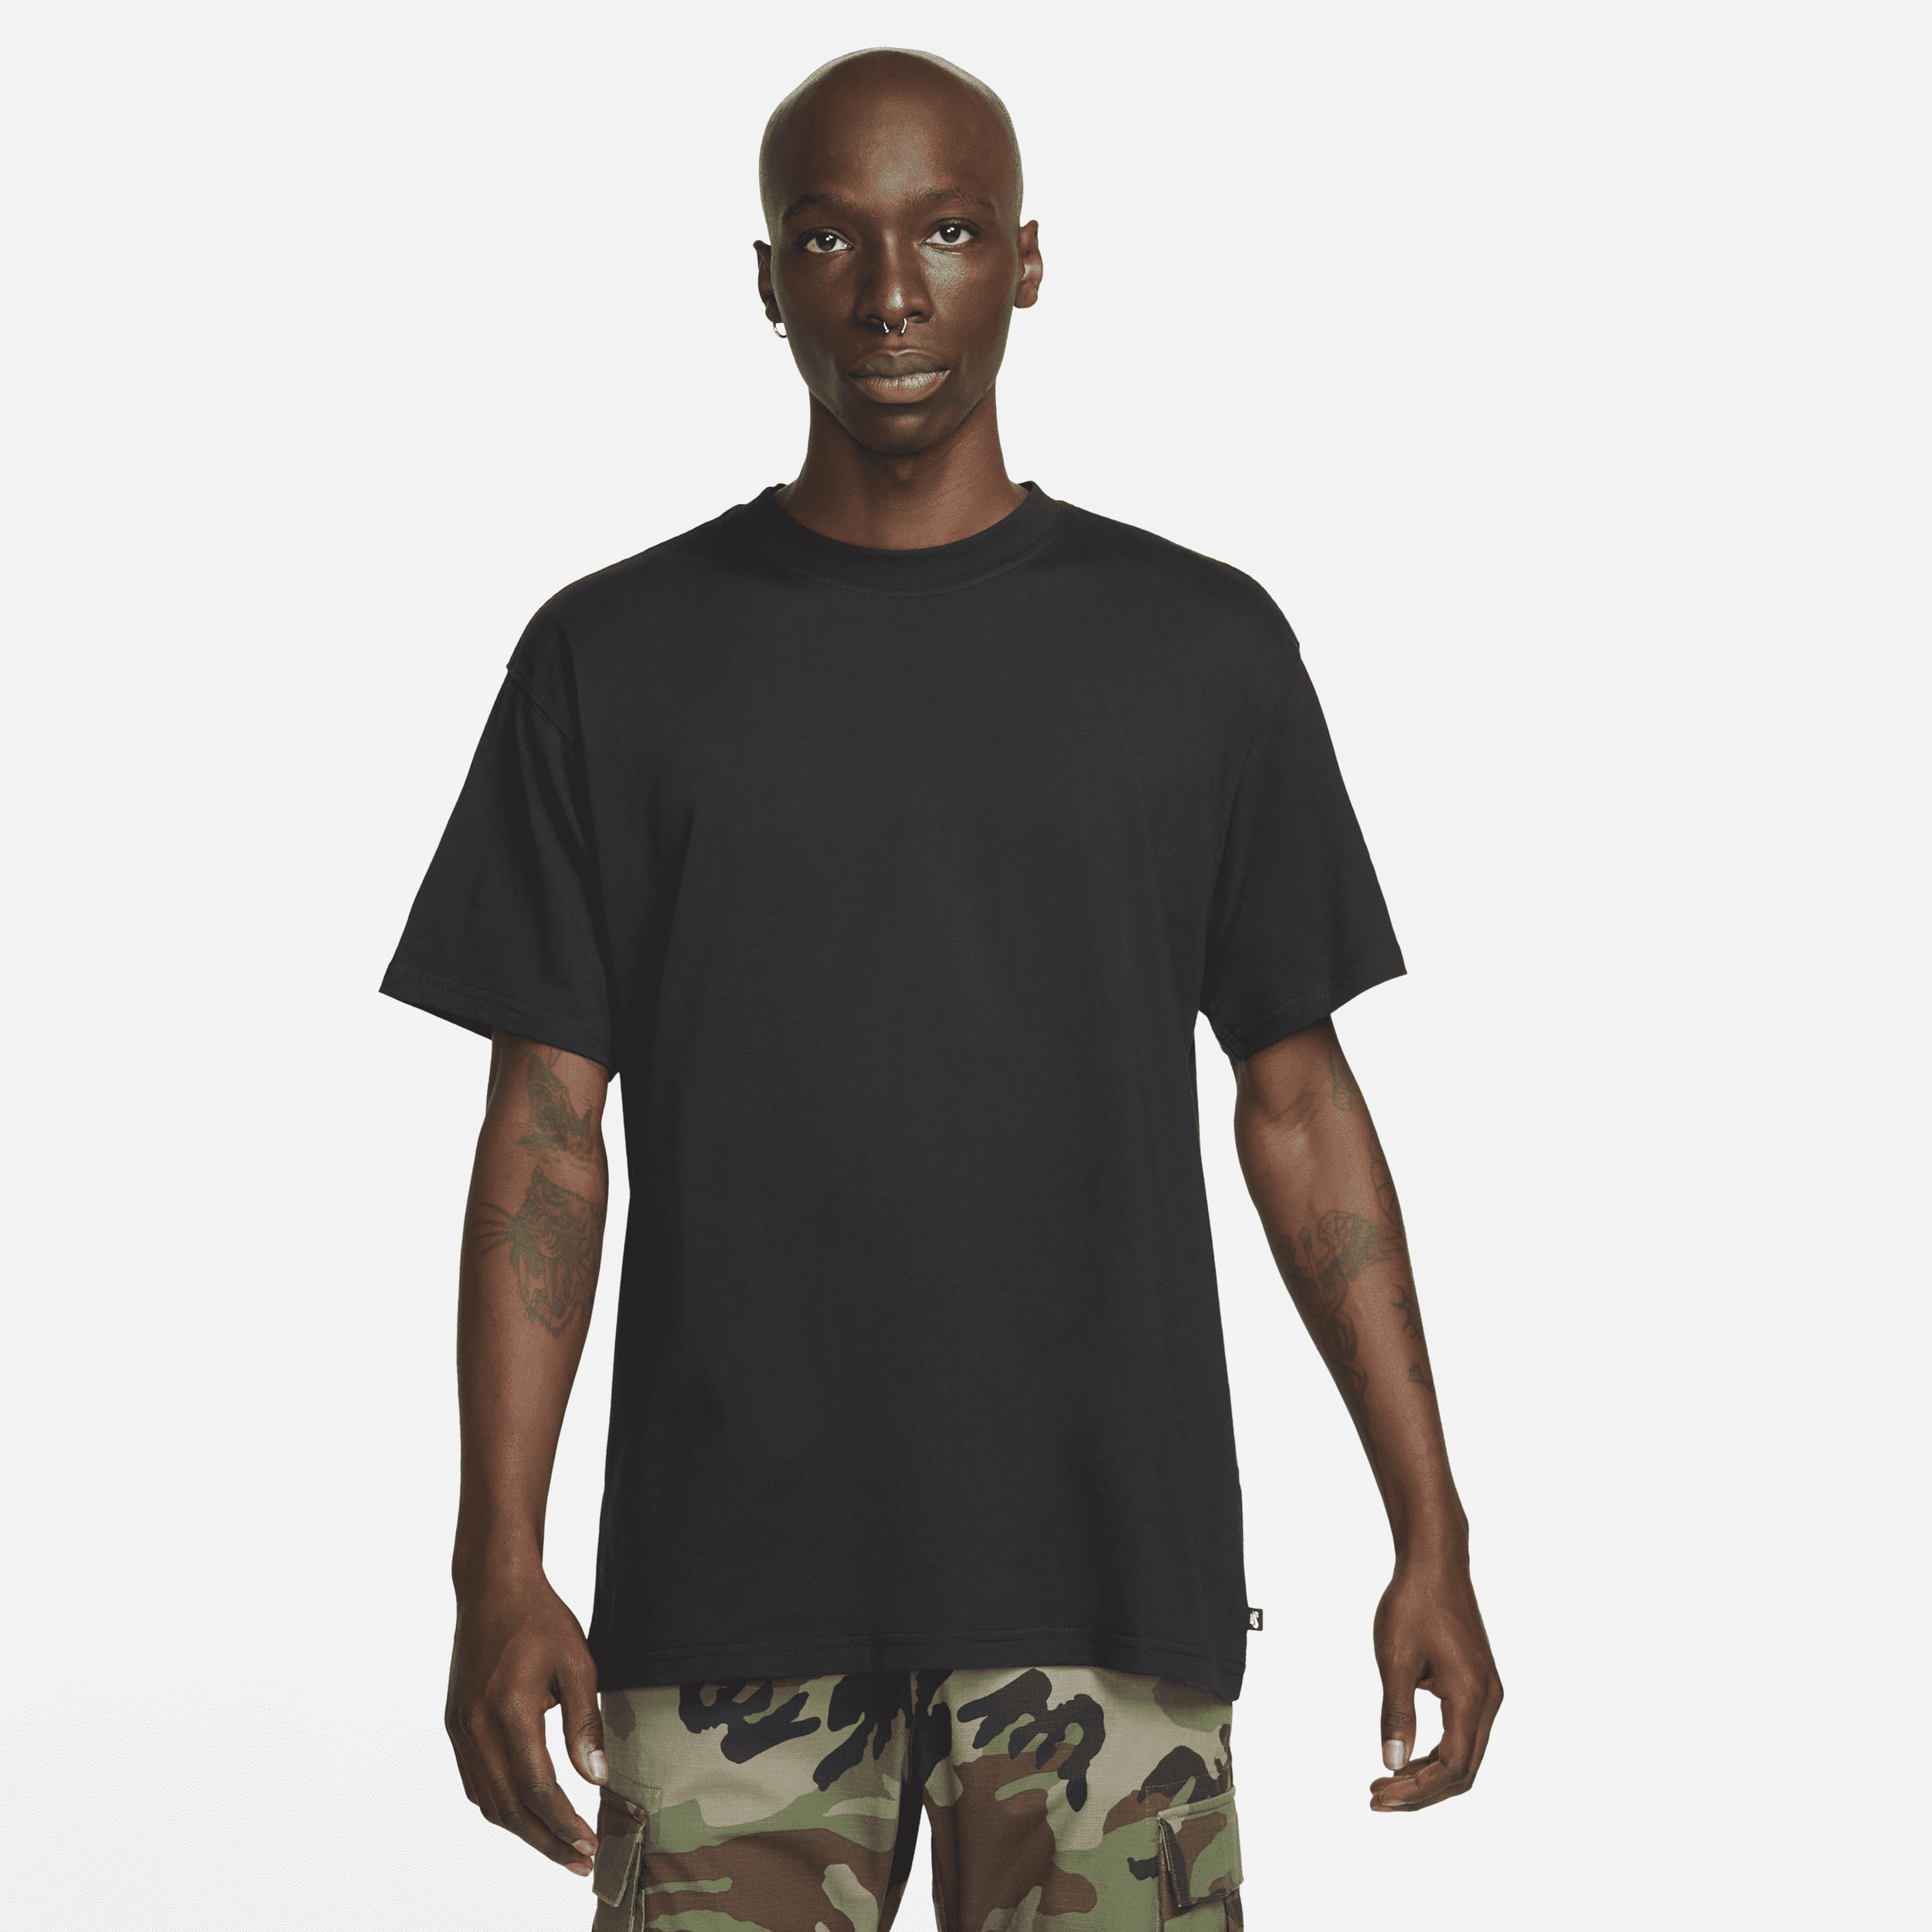 Camiseta Nike SB Masculina